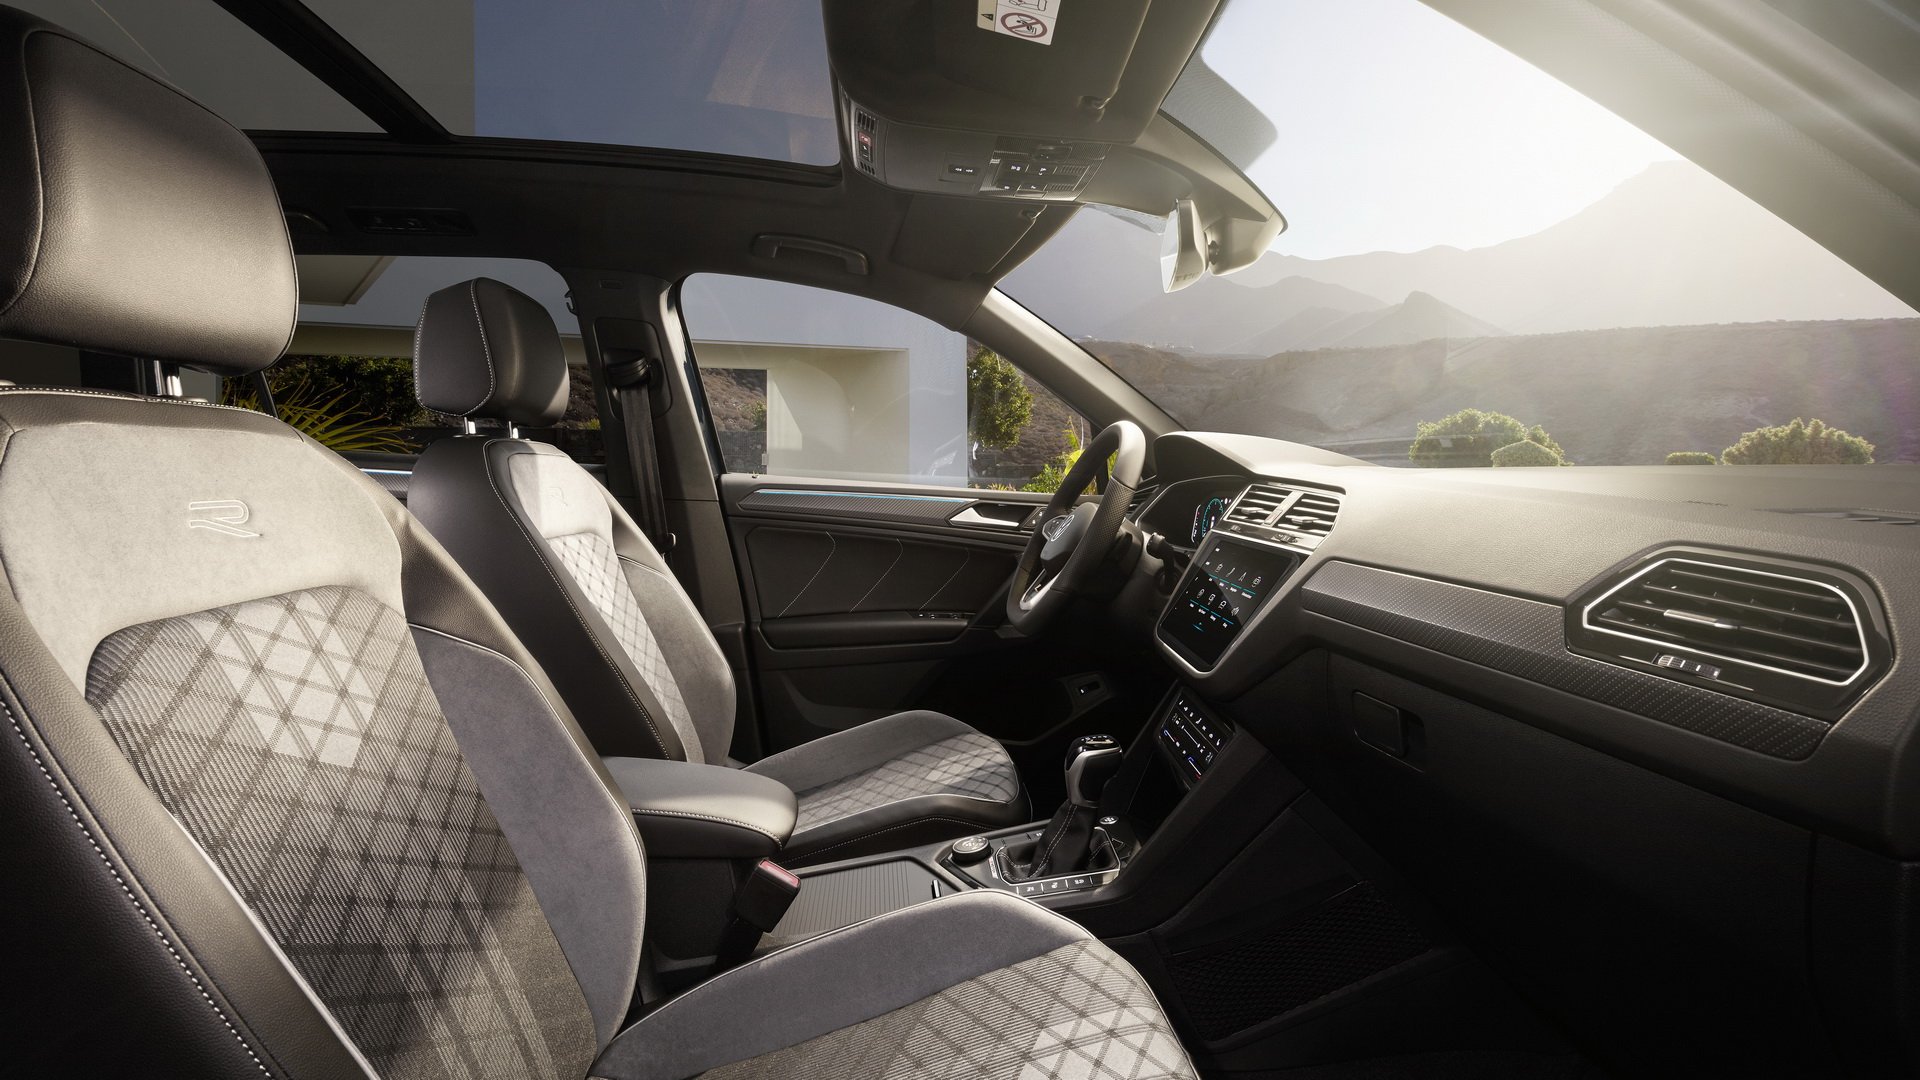 Volkswagen Tiguan interior - Front Seats